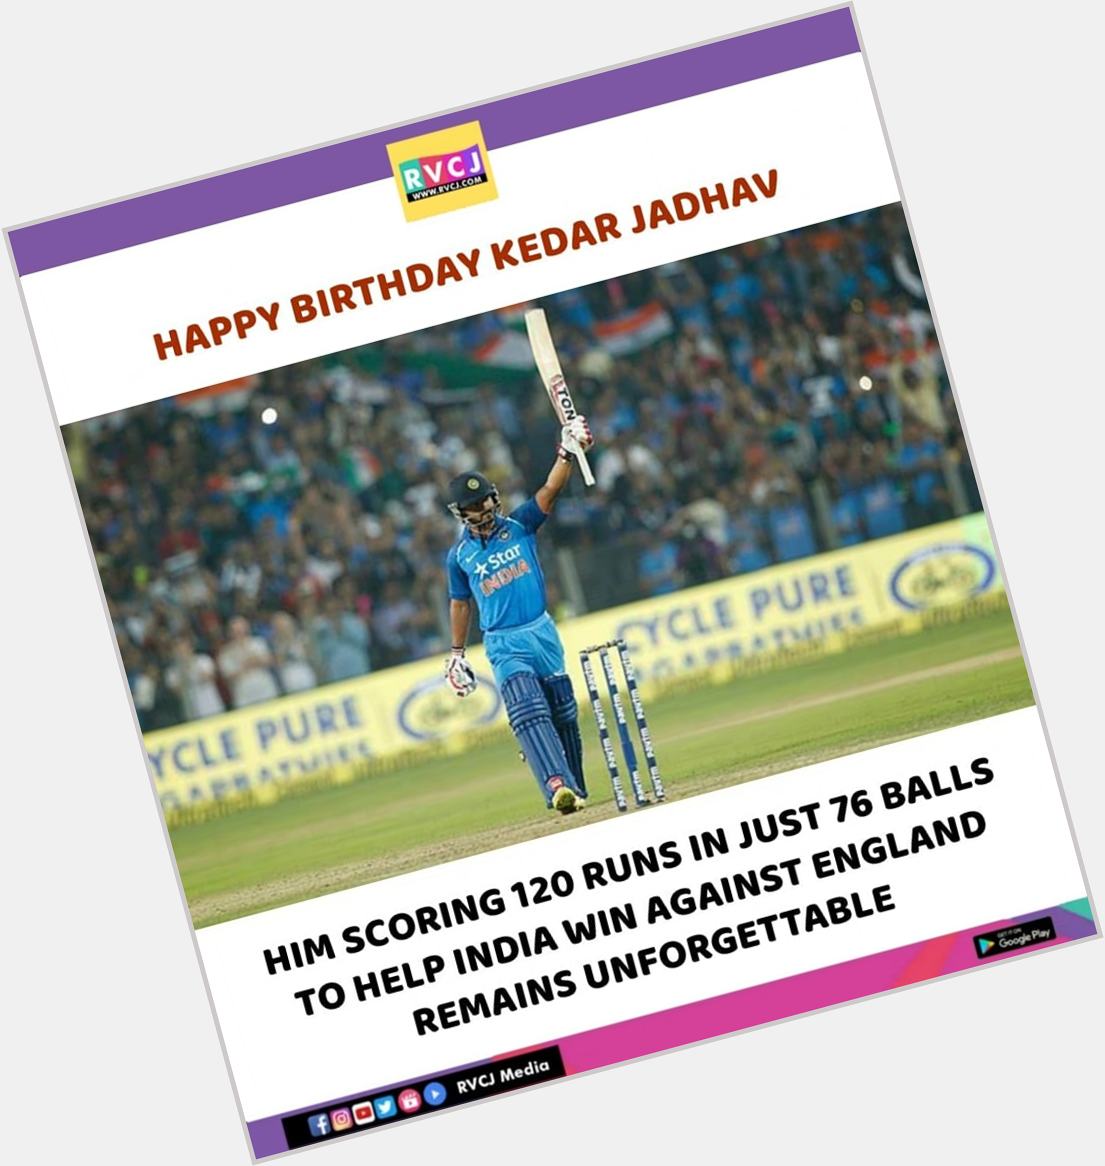 Happy Birthday Kedar Jadhav!   